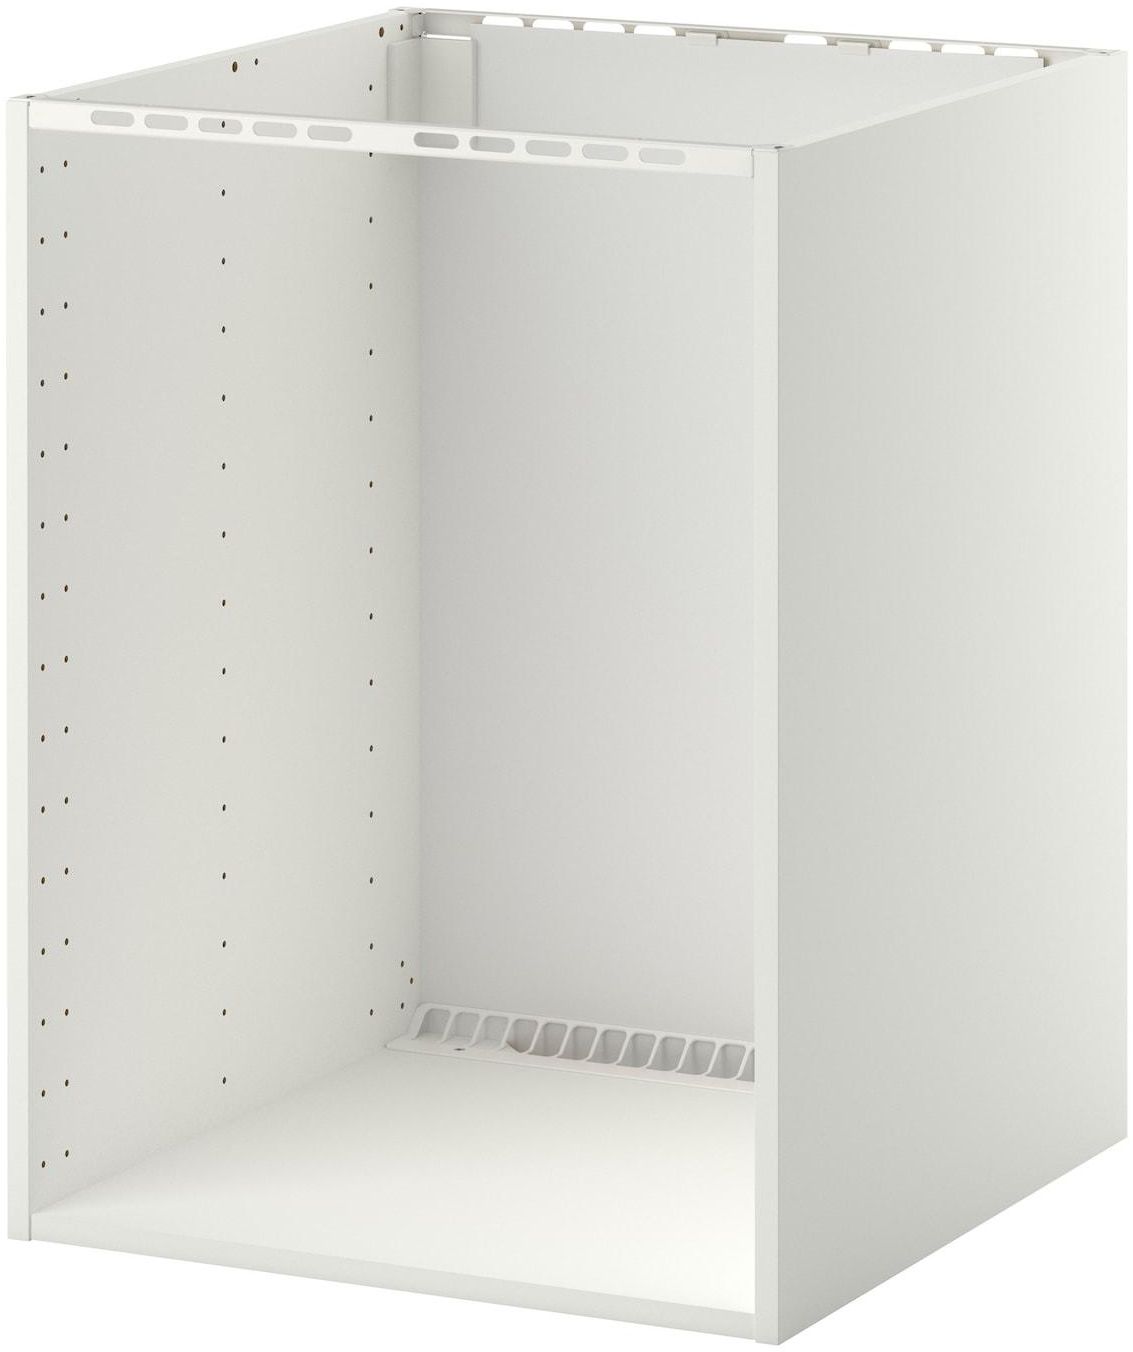 METOD وحدة تخزين ارضية لفرن/حوض مدمج - أبيض ‎60x60x80 سم‏